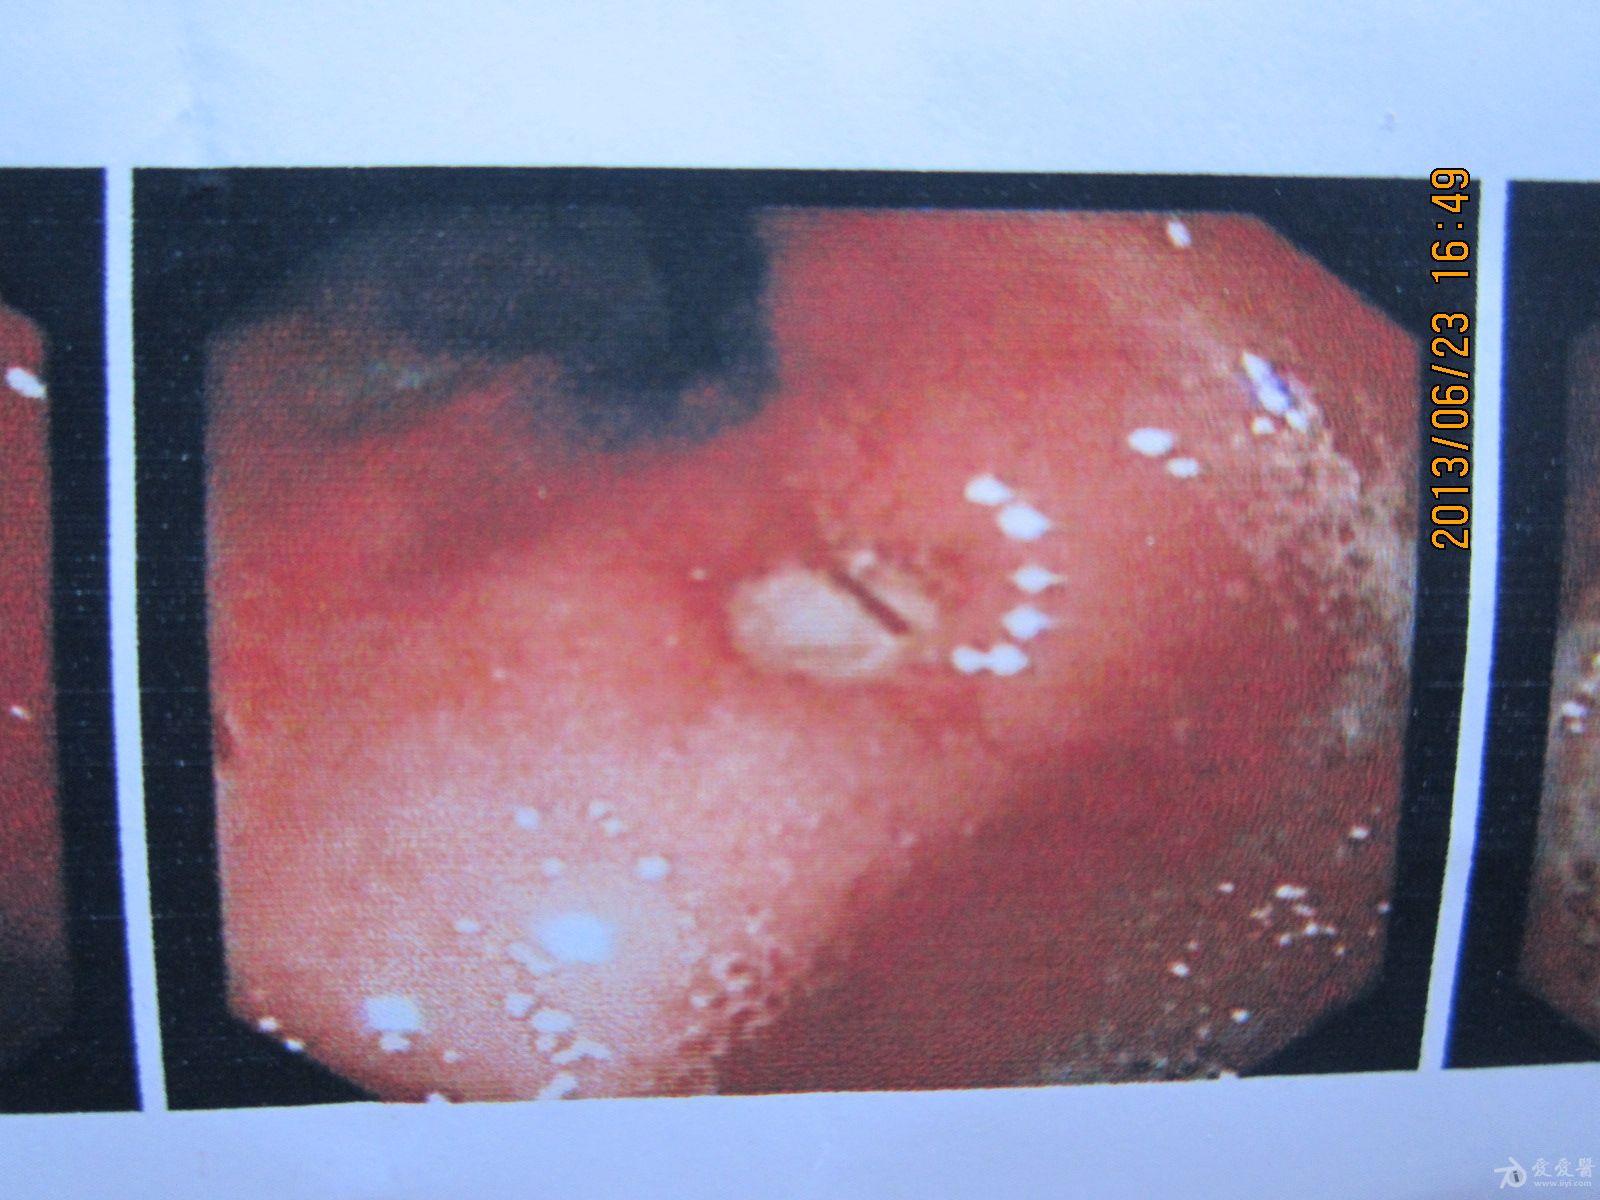 胃溃疡胃镜图严重图片